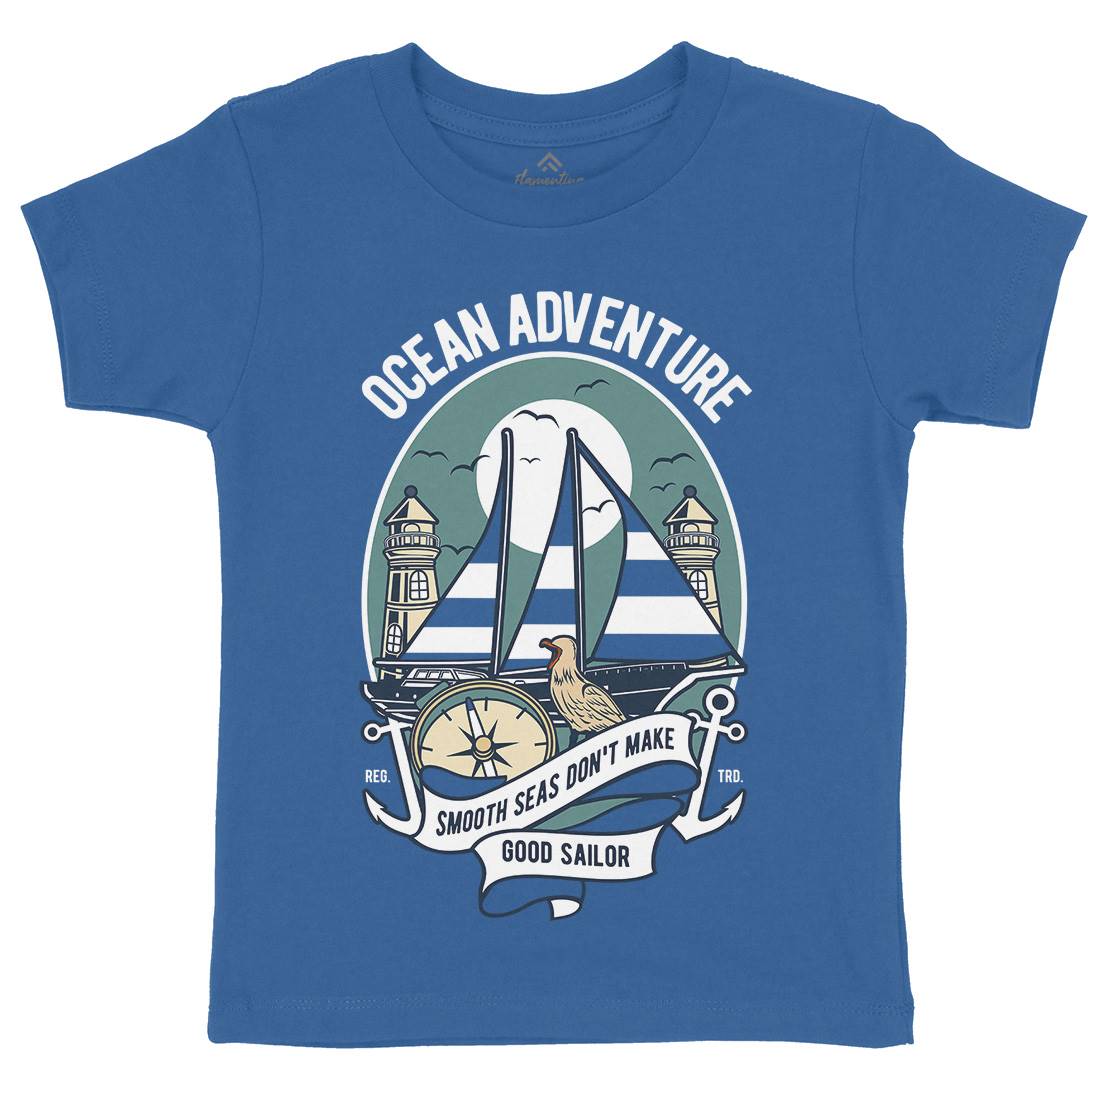 Ocean Adventure Kids Crew Neck T-Shirt Navy D560